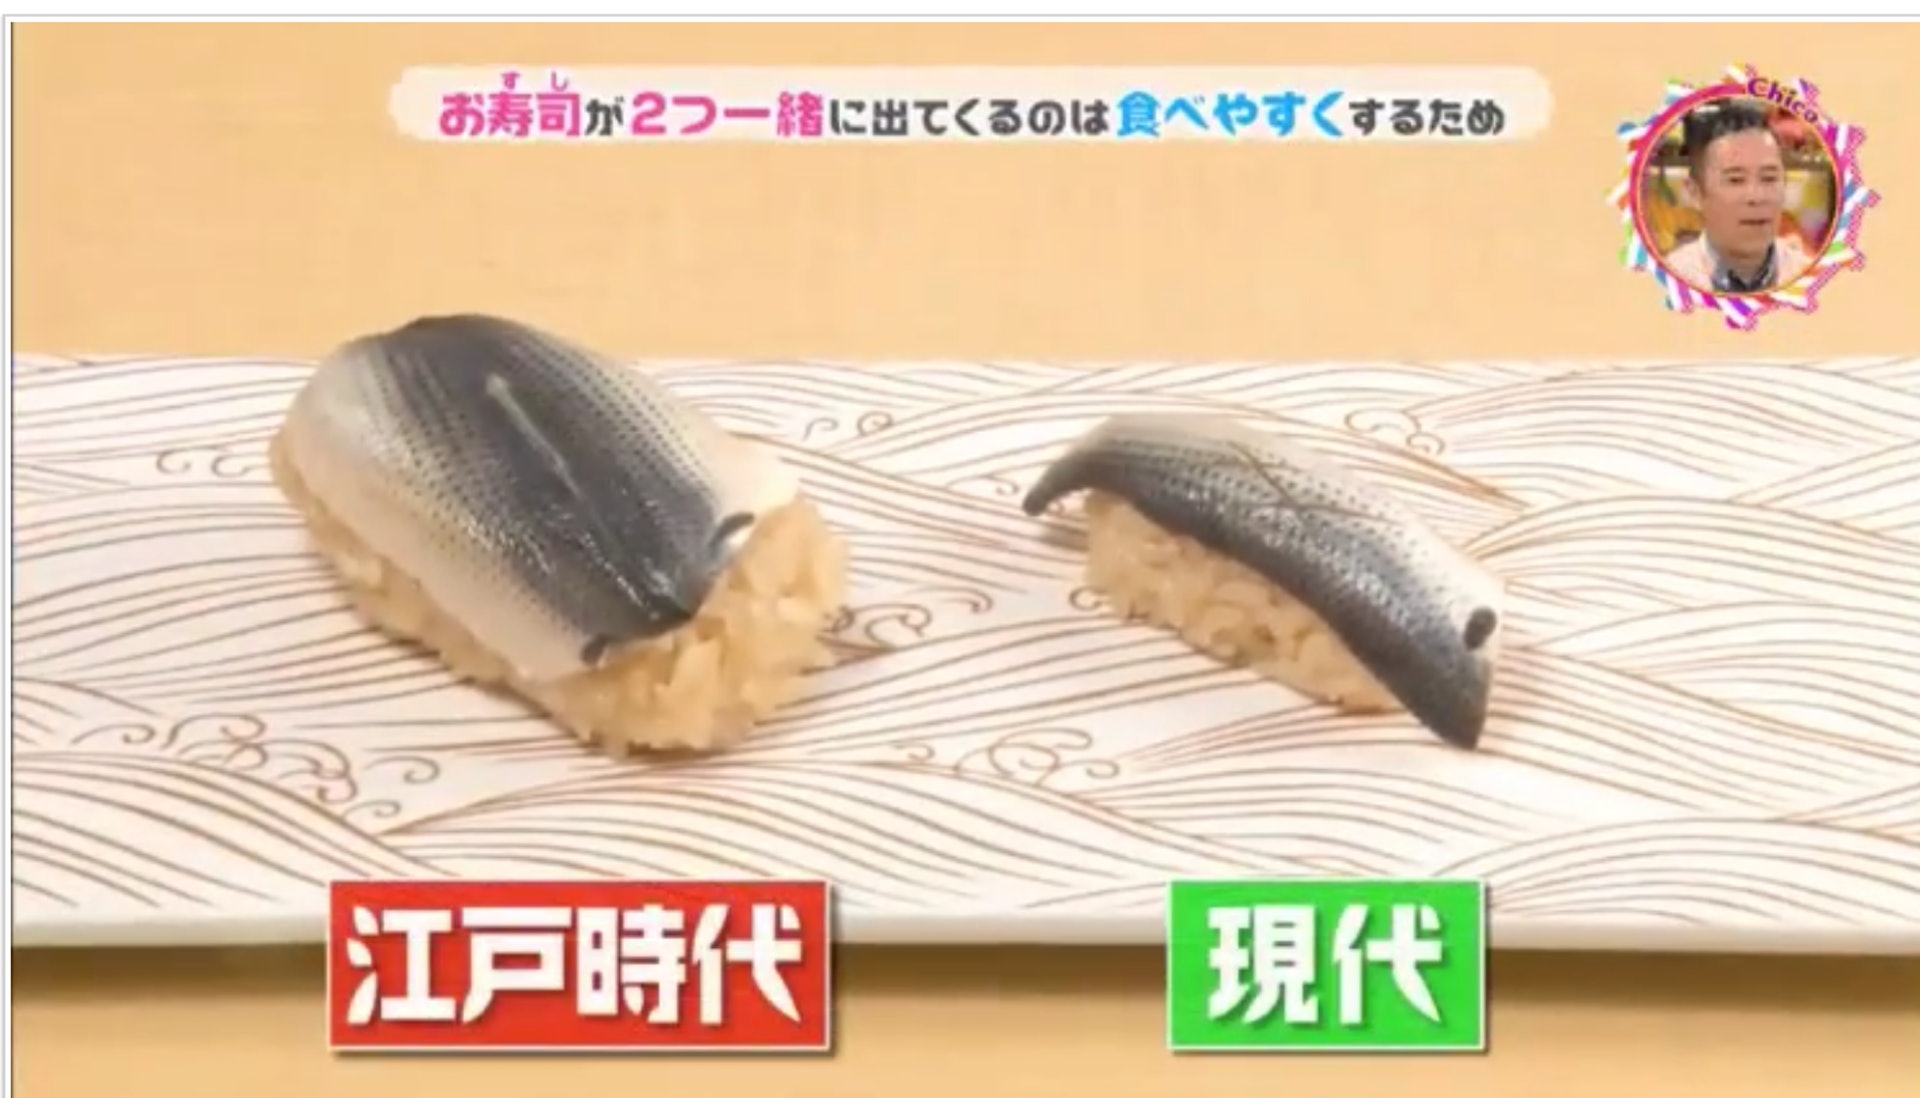 饮食文化的研究家永杉久指据说在江户时代，刚发明的手握寿司尺寸是比较大，是现在一般手握寿司的2倍，有如饭团般大小。 （日本电视台NHK节目《チコちゃんに叱られる！》截图